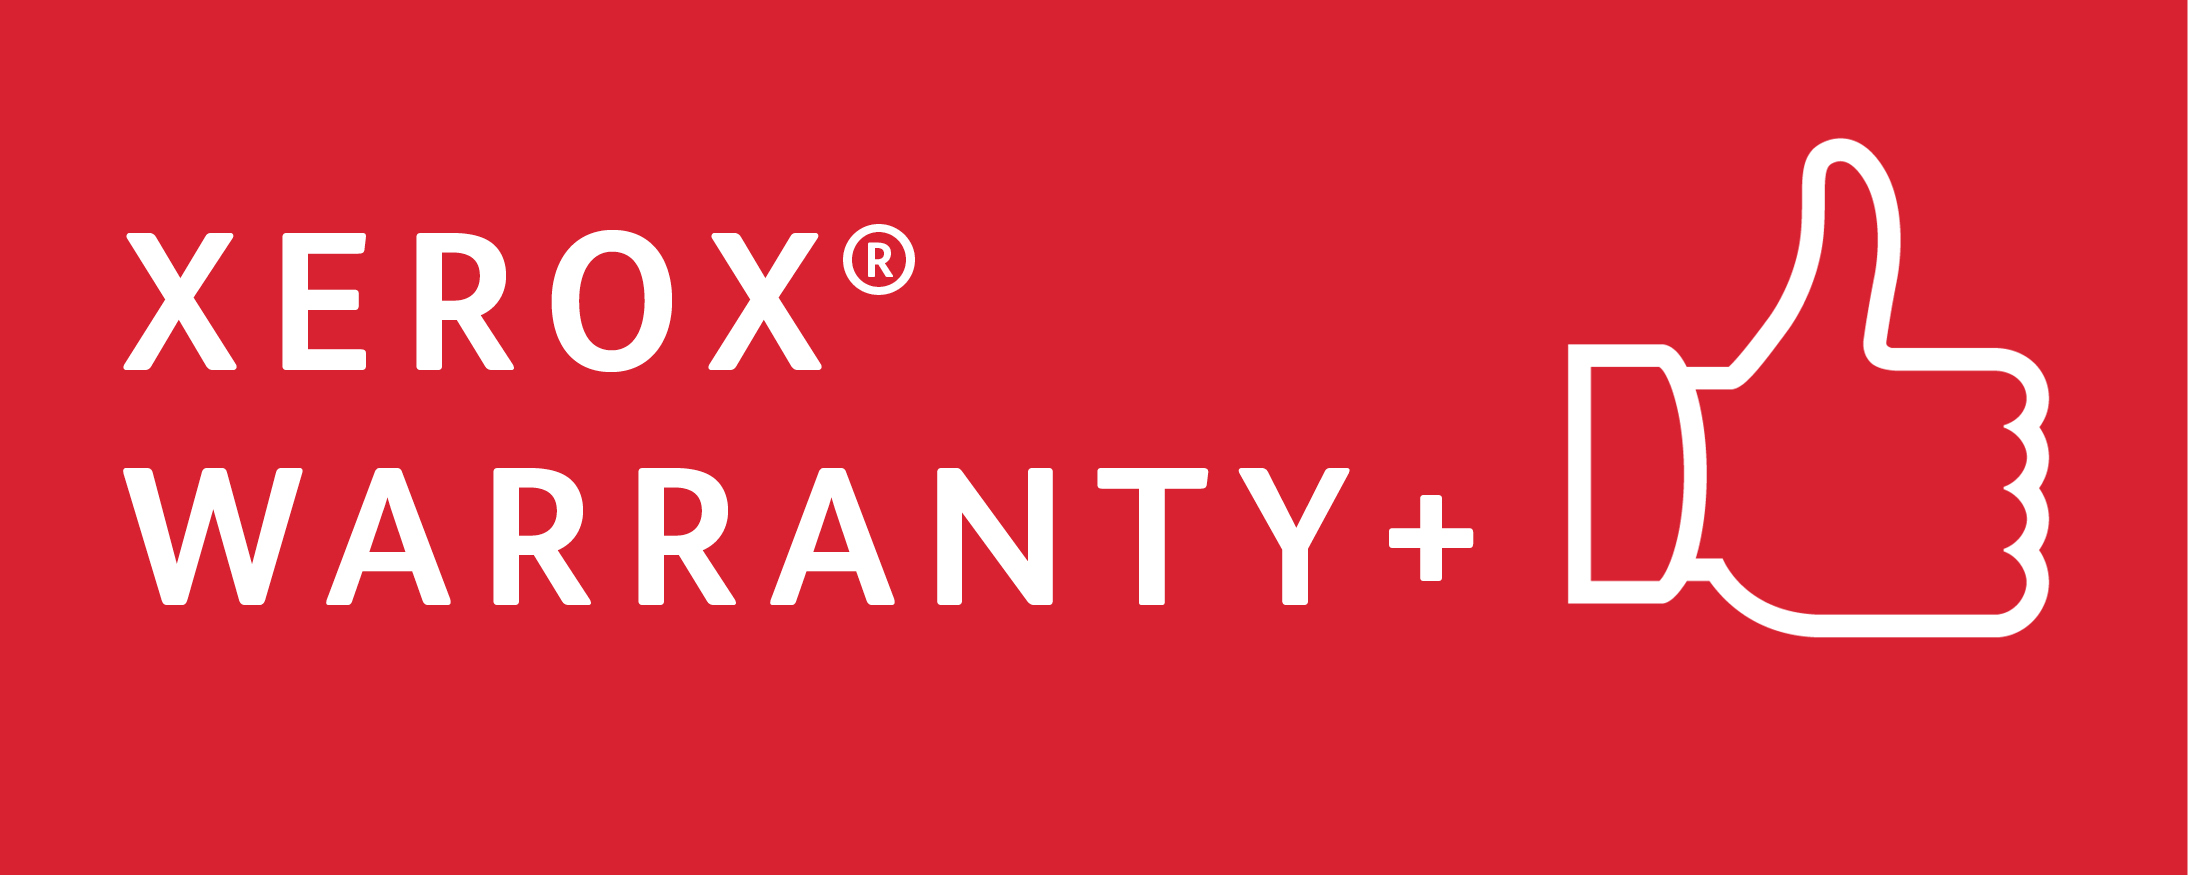 xerox warranty